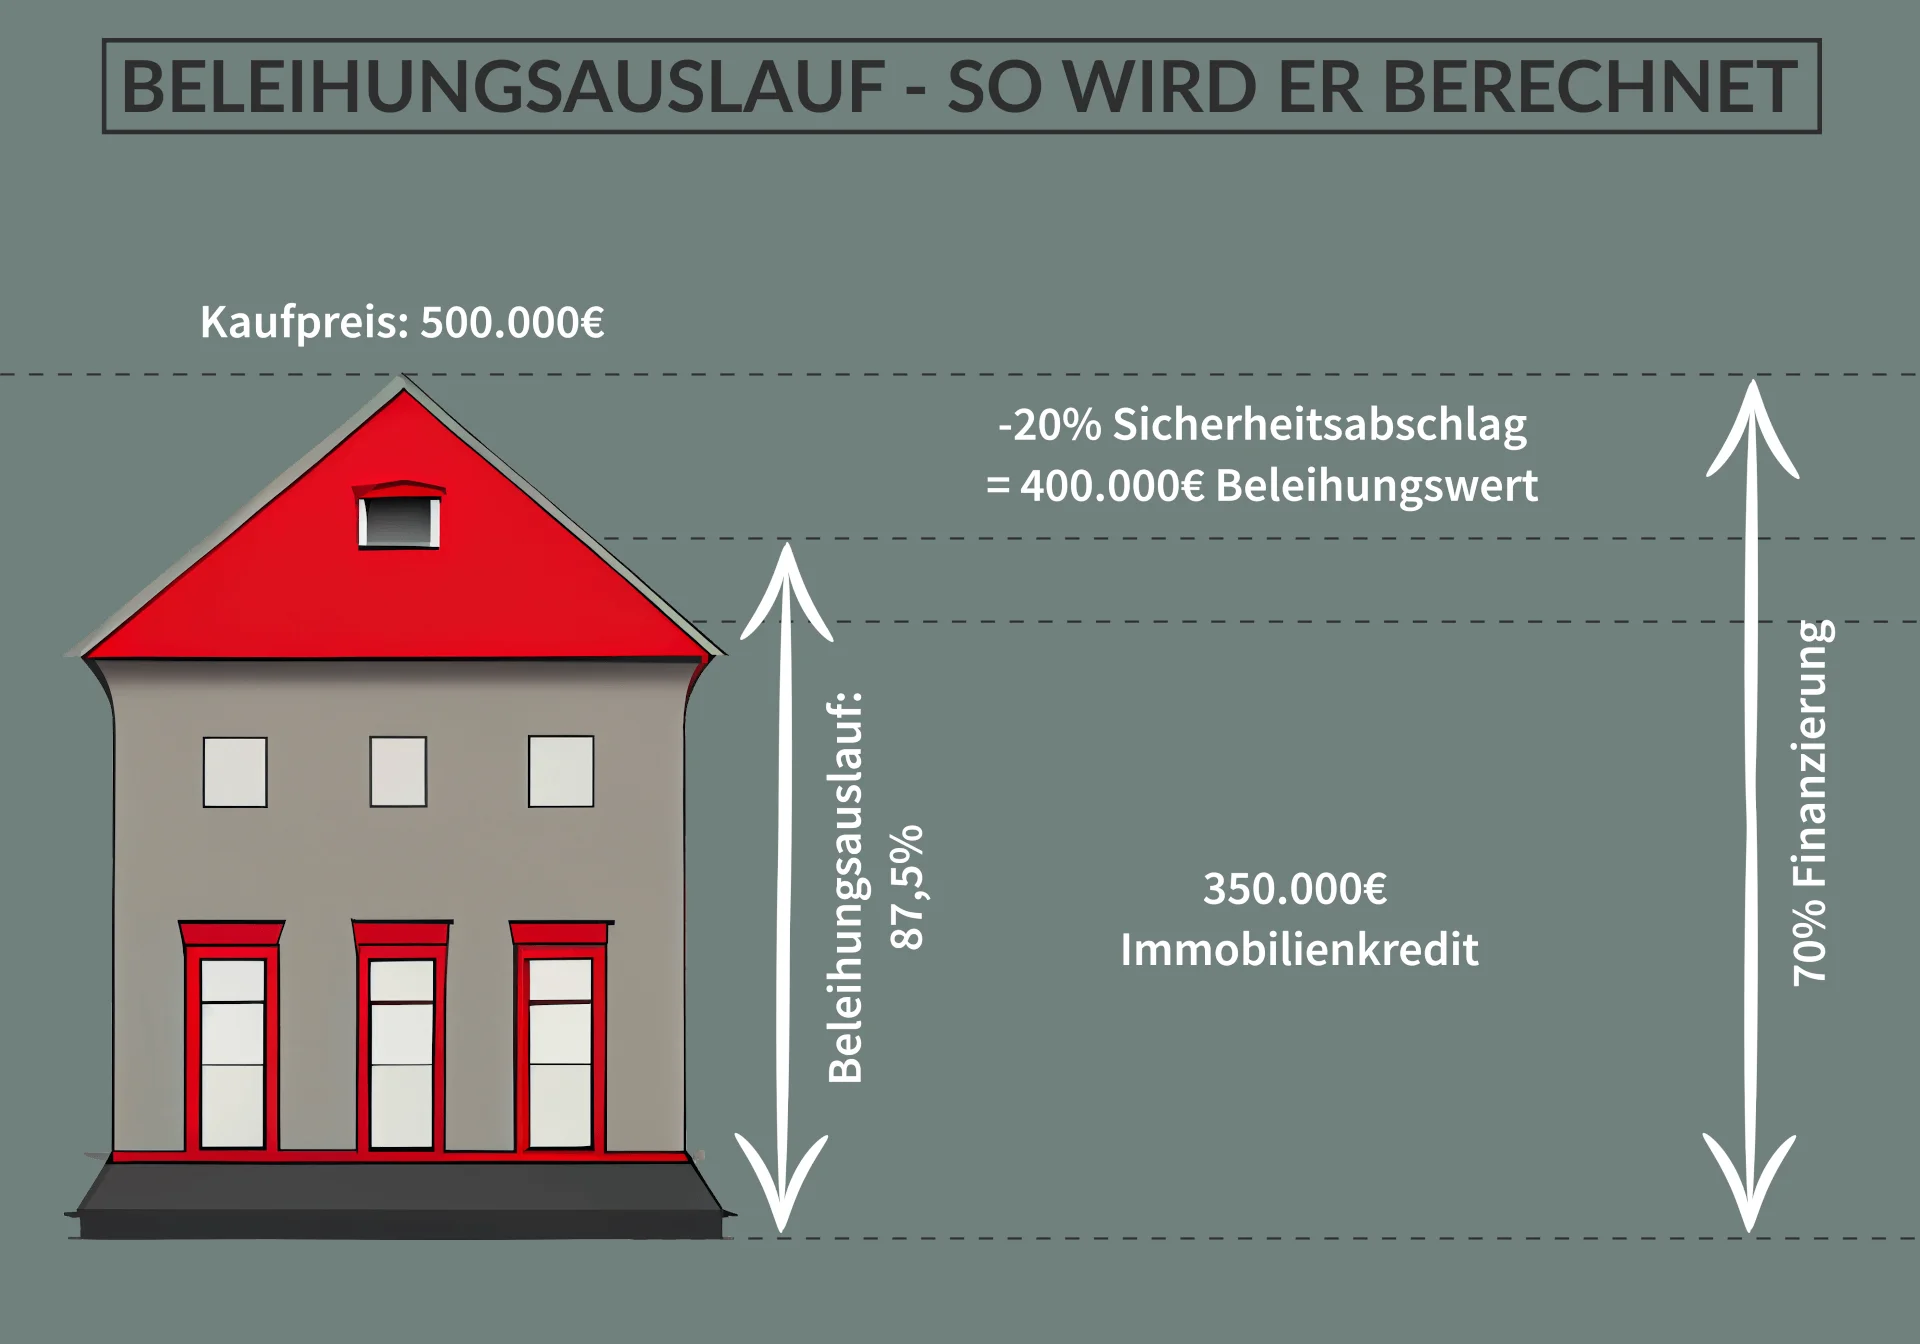 Zusammenhang zwischen Kaufpreis, Beleihungswert und Beleihungsauslauf einer Immobilie in einer visuellen Darstellung.